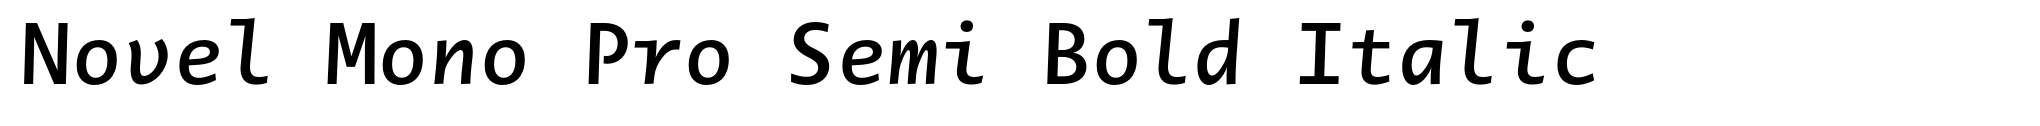 Novel Mono Pro Semi Bold Italic image